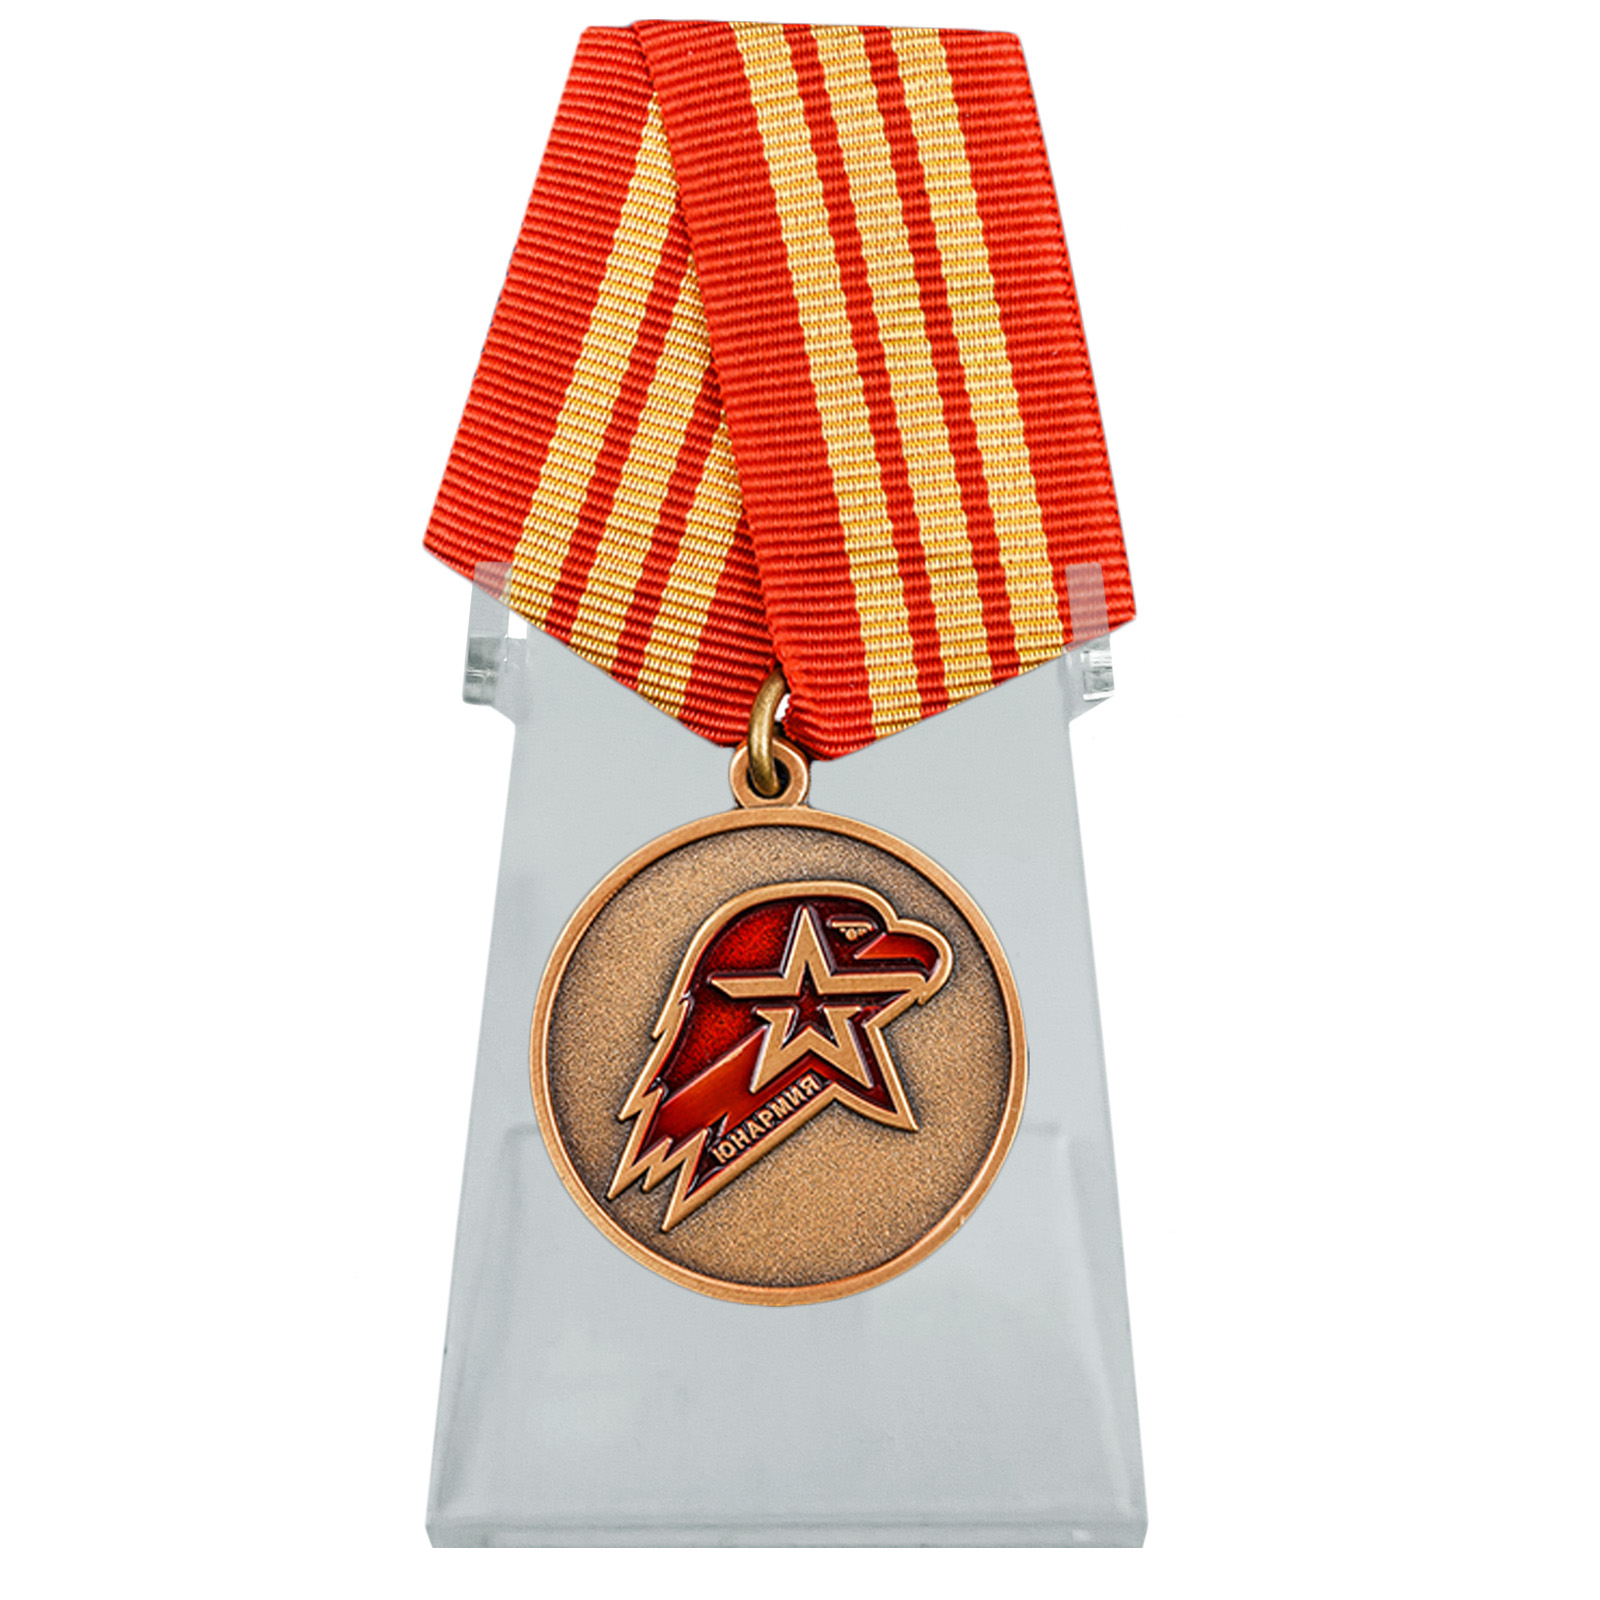 Медаль "Юнармия" 3 степени на подставке